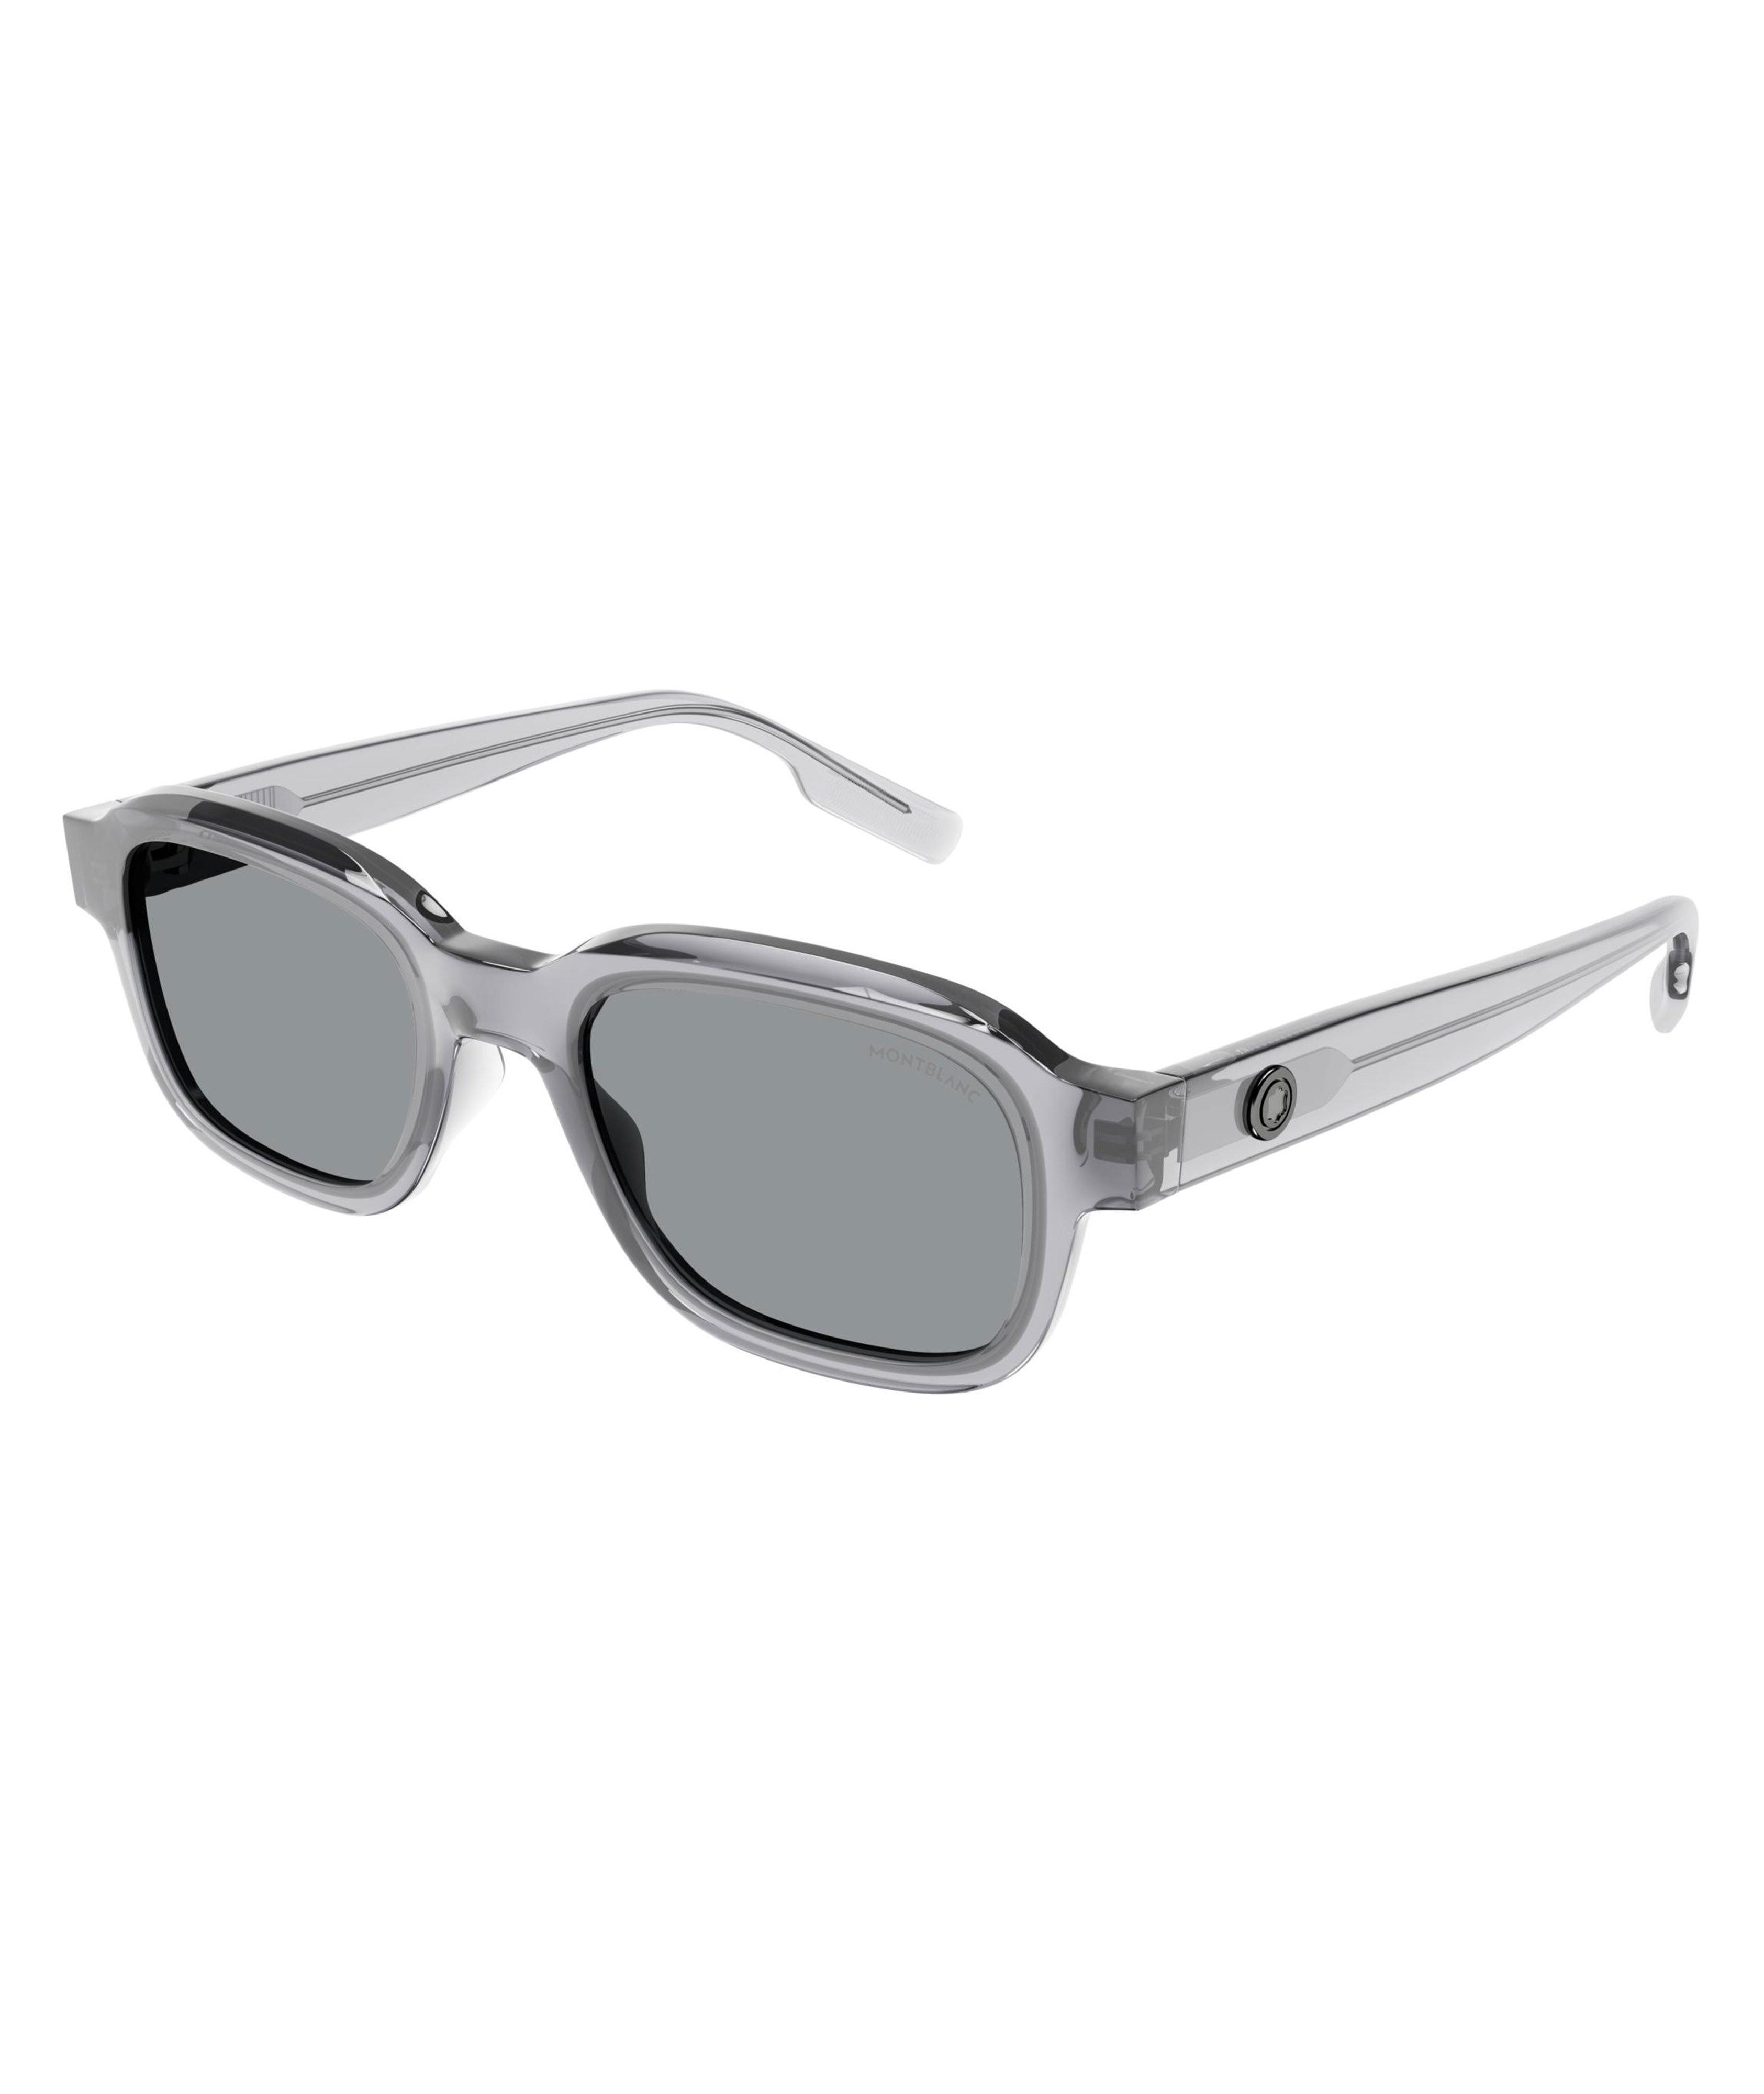 Transparent Rectangular Sunglasses image 0